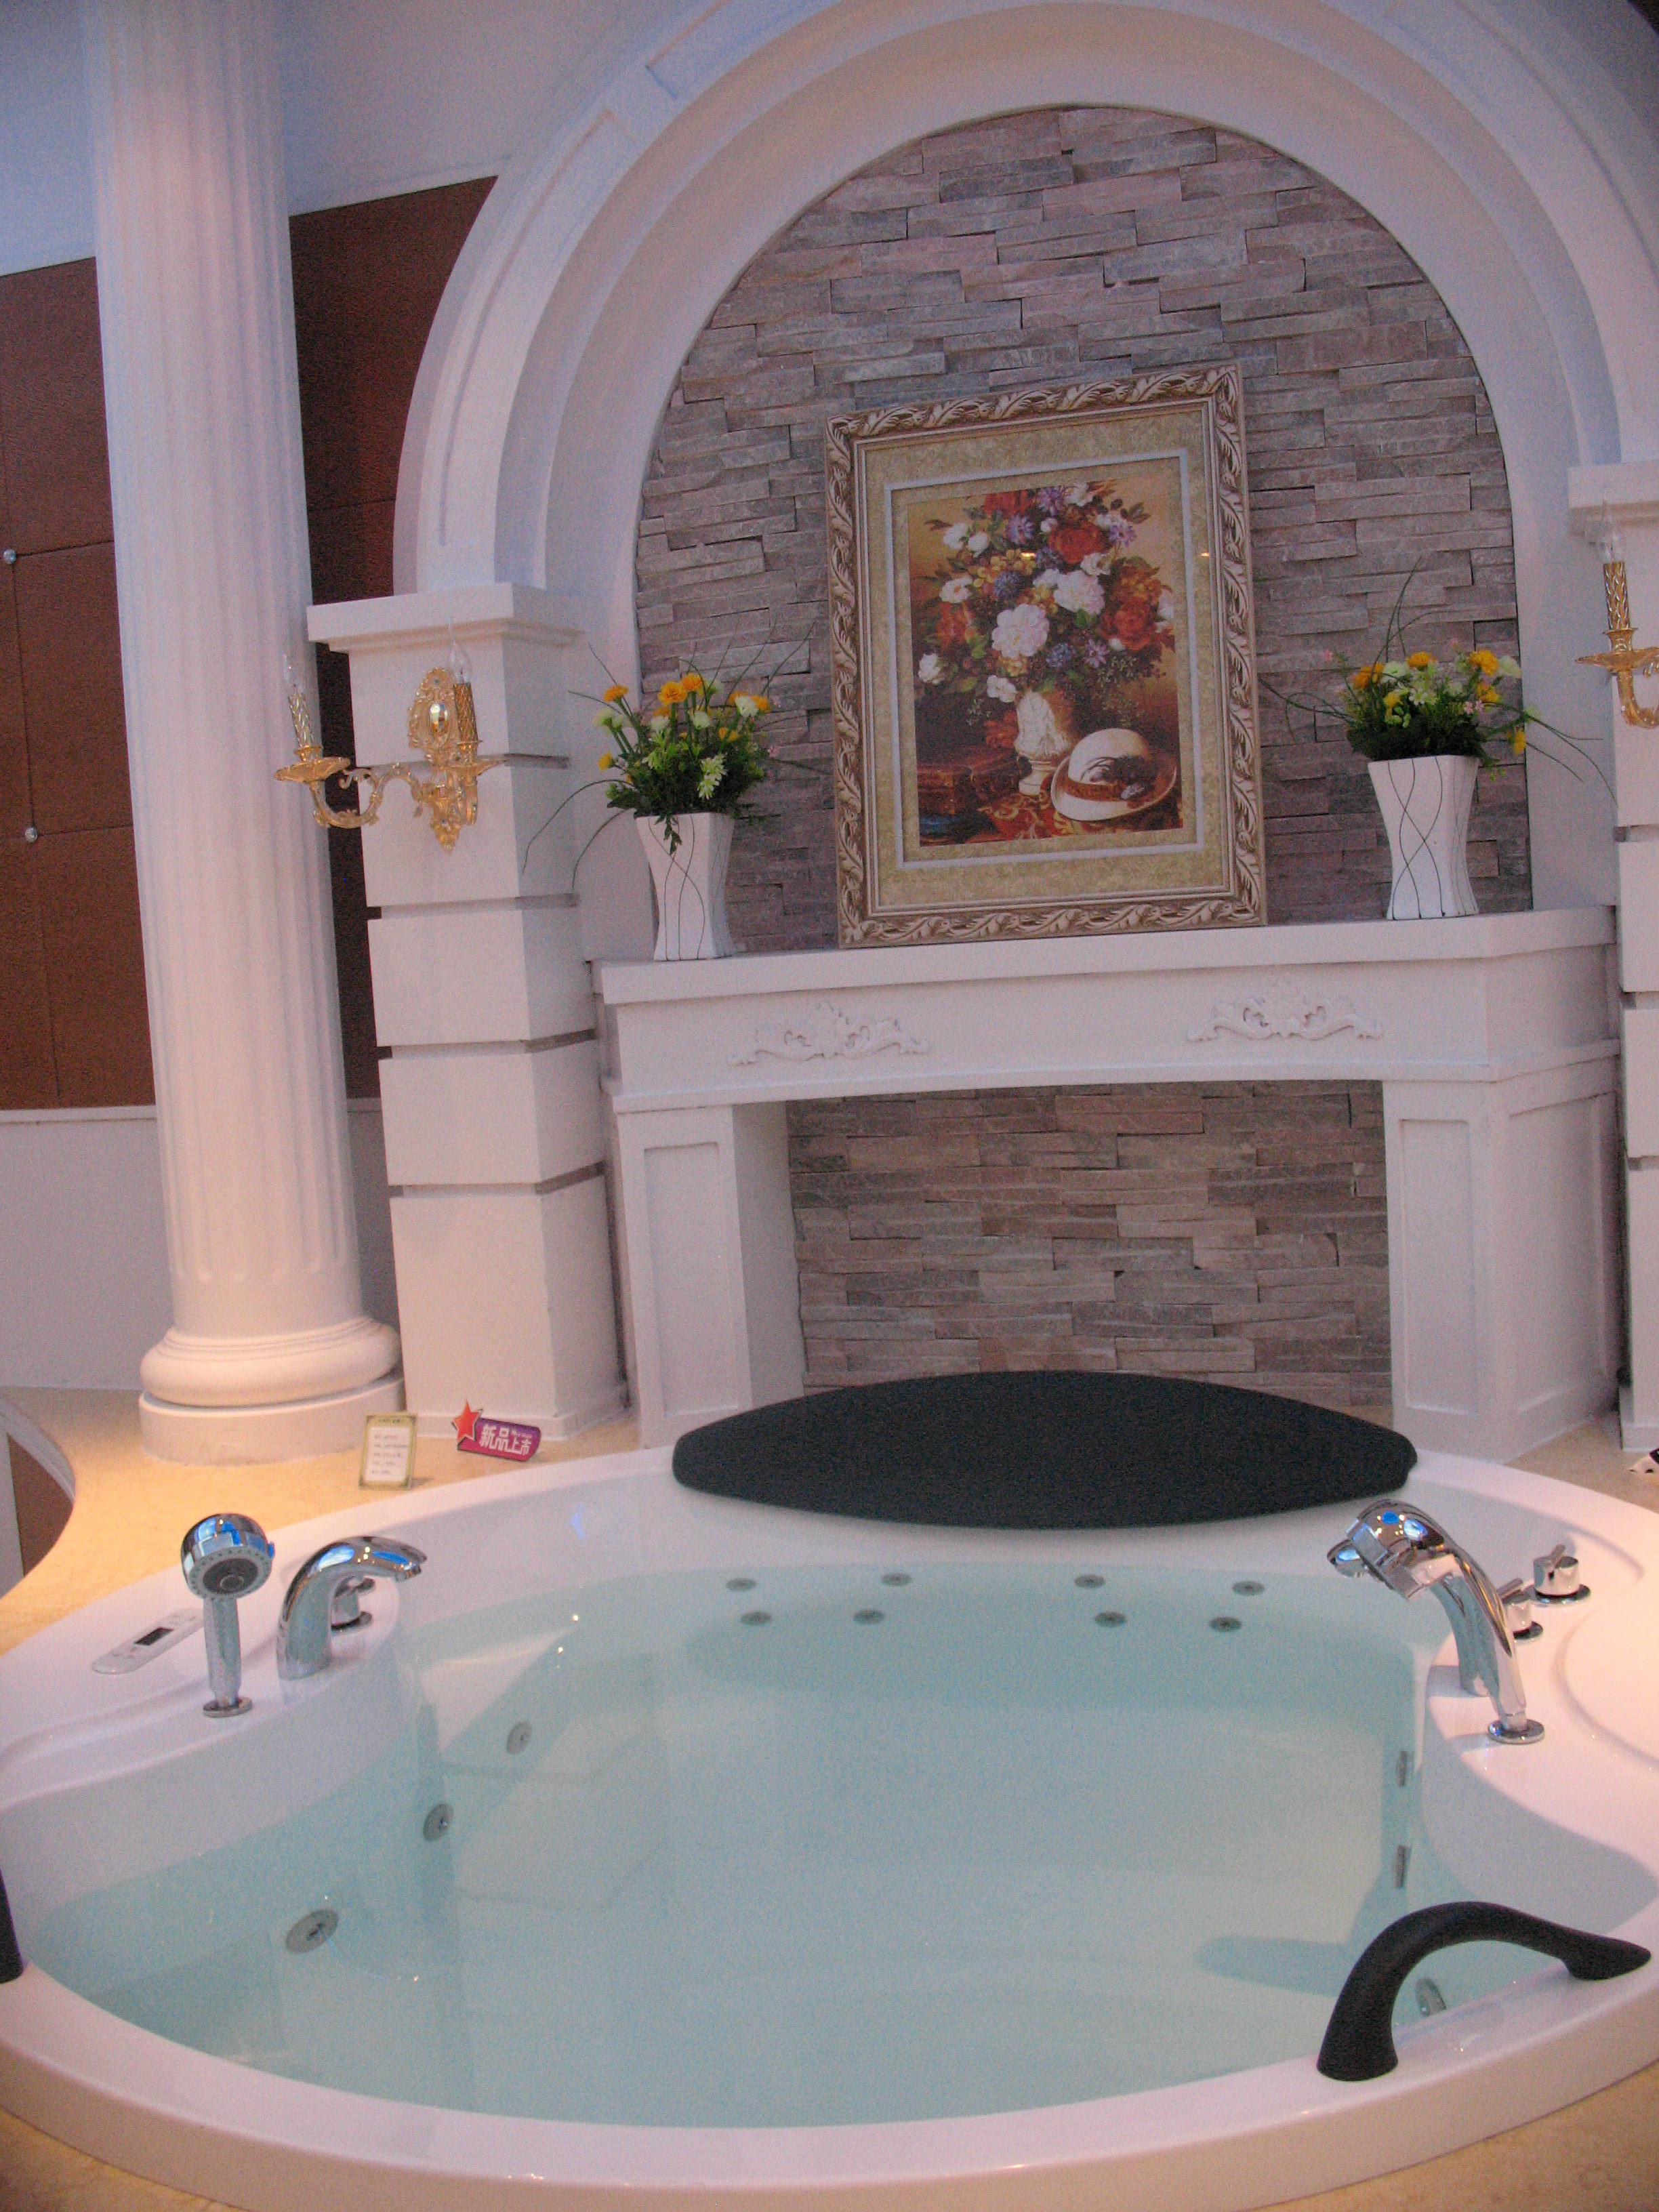 Luxury Whirlpool jetted jacuzzi bathtub